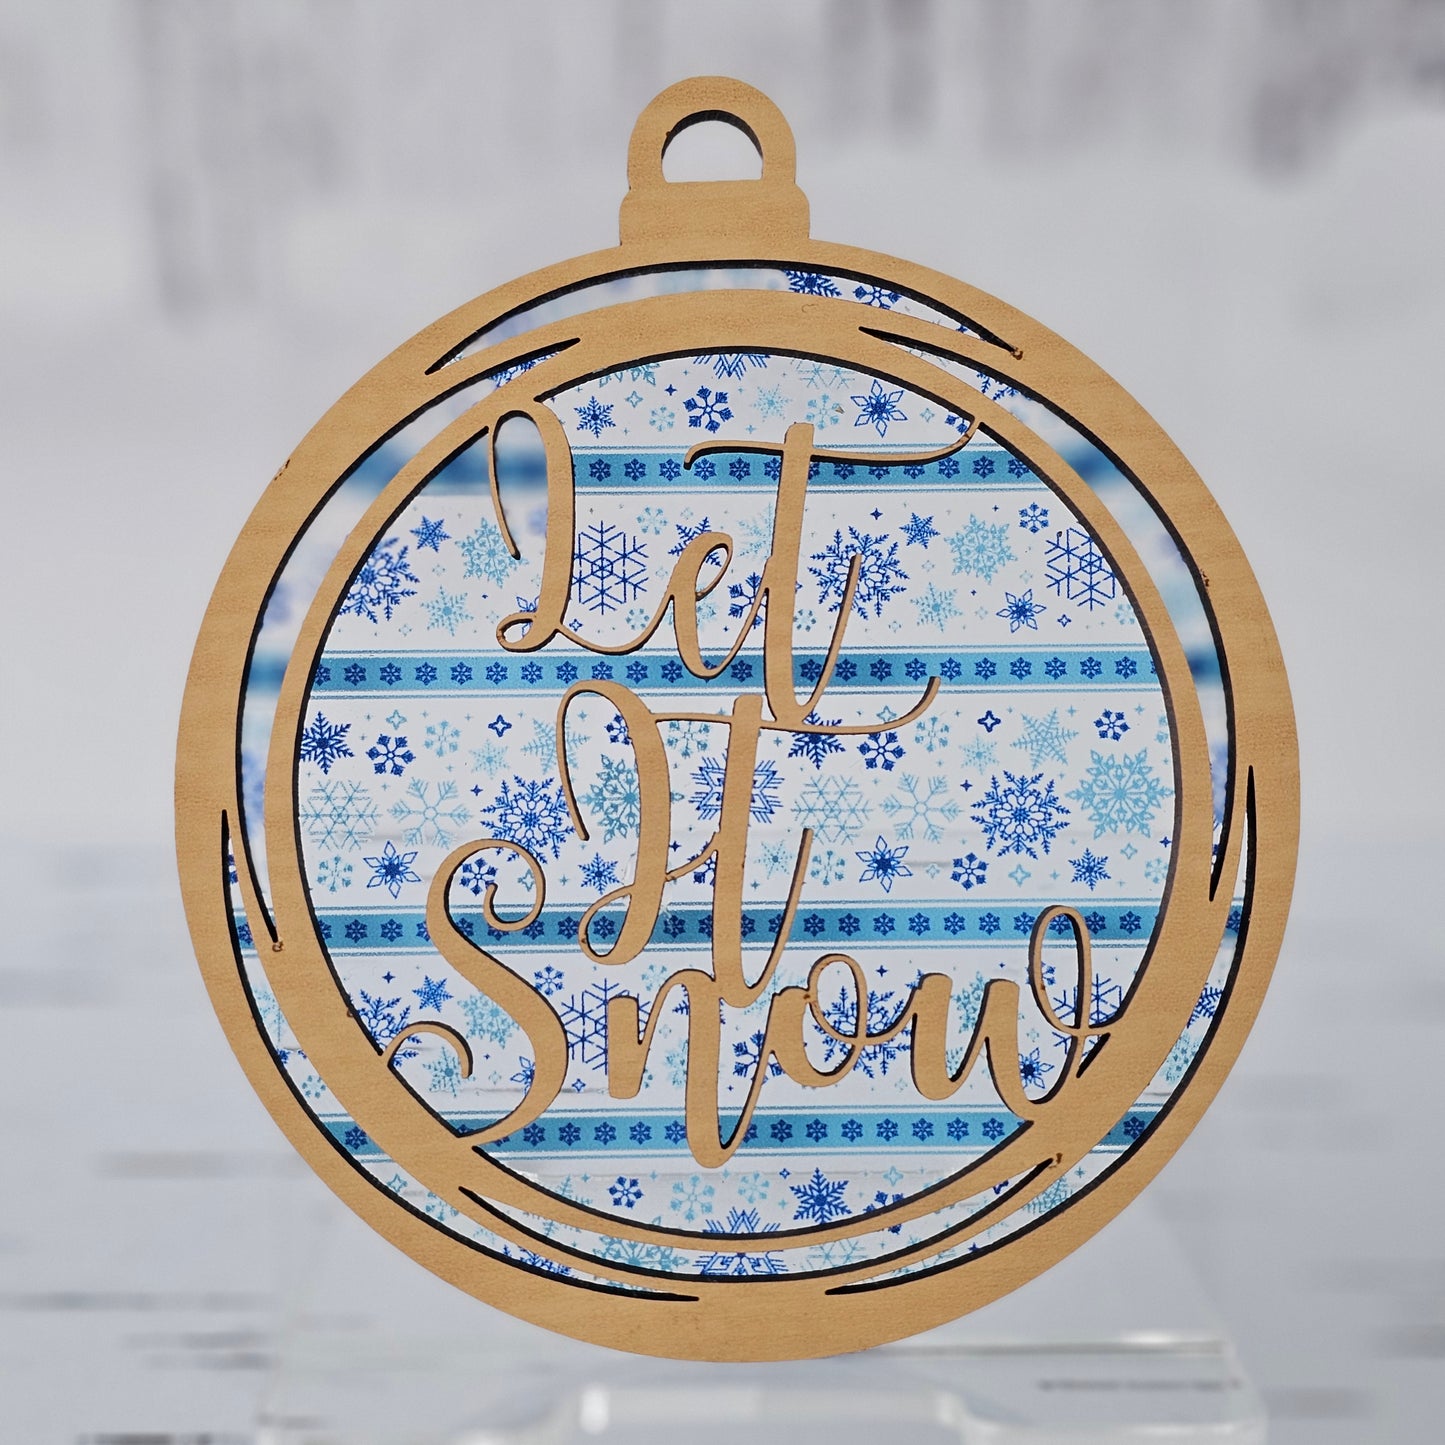 Let It Snow Ornament - Translucent Light Blue Snowflakes